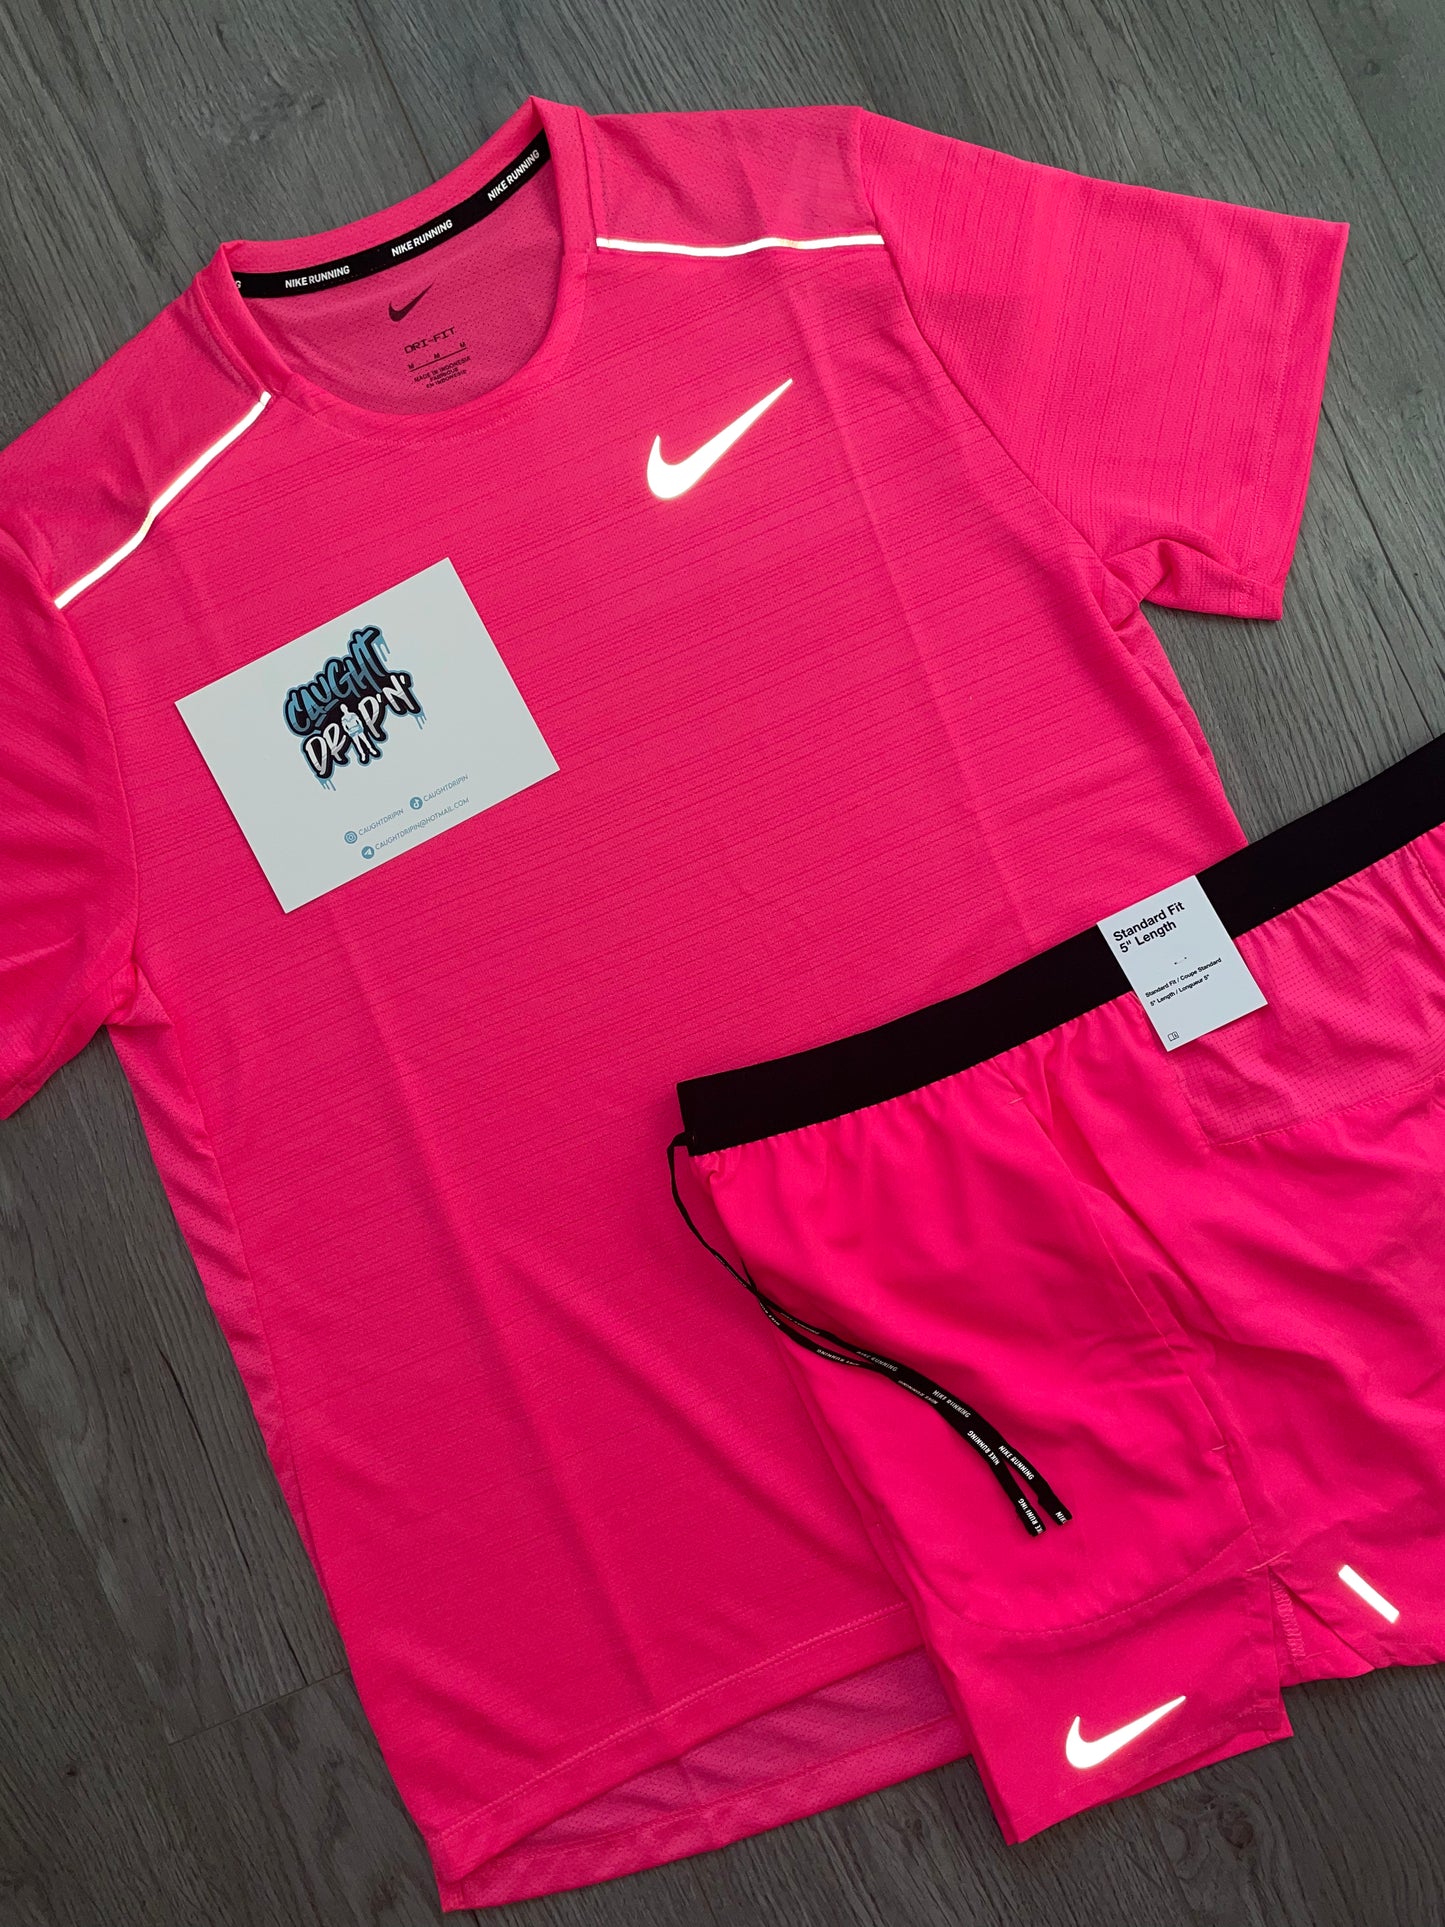 OG Nike Miler Set | Hot Pink